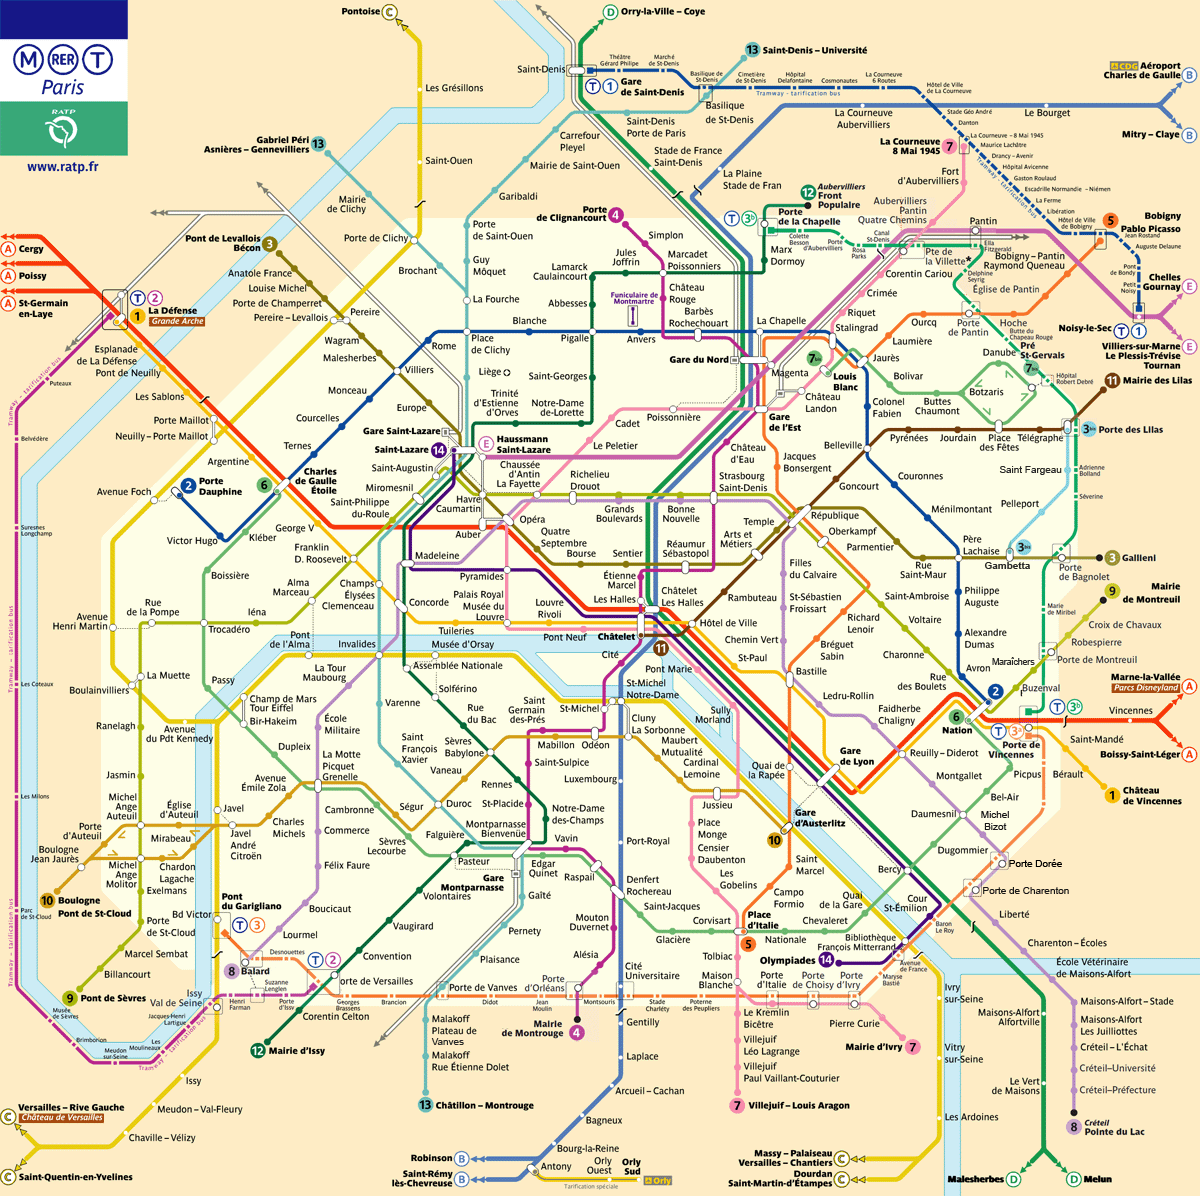 Paris without a map